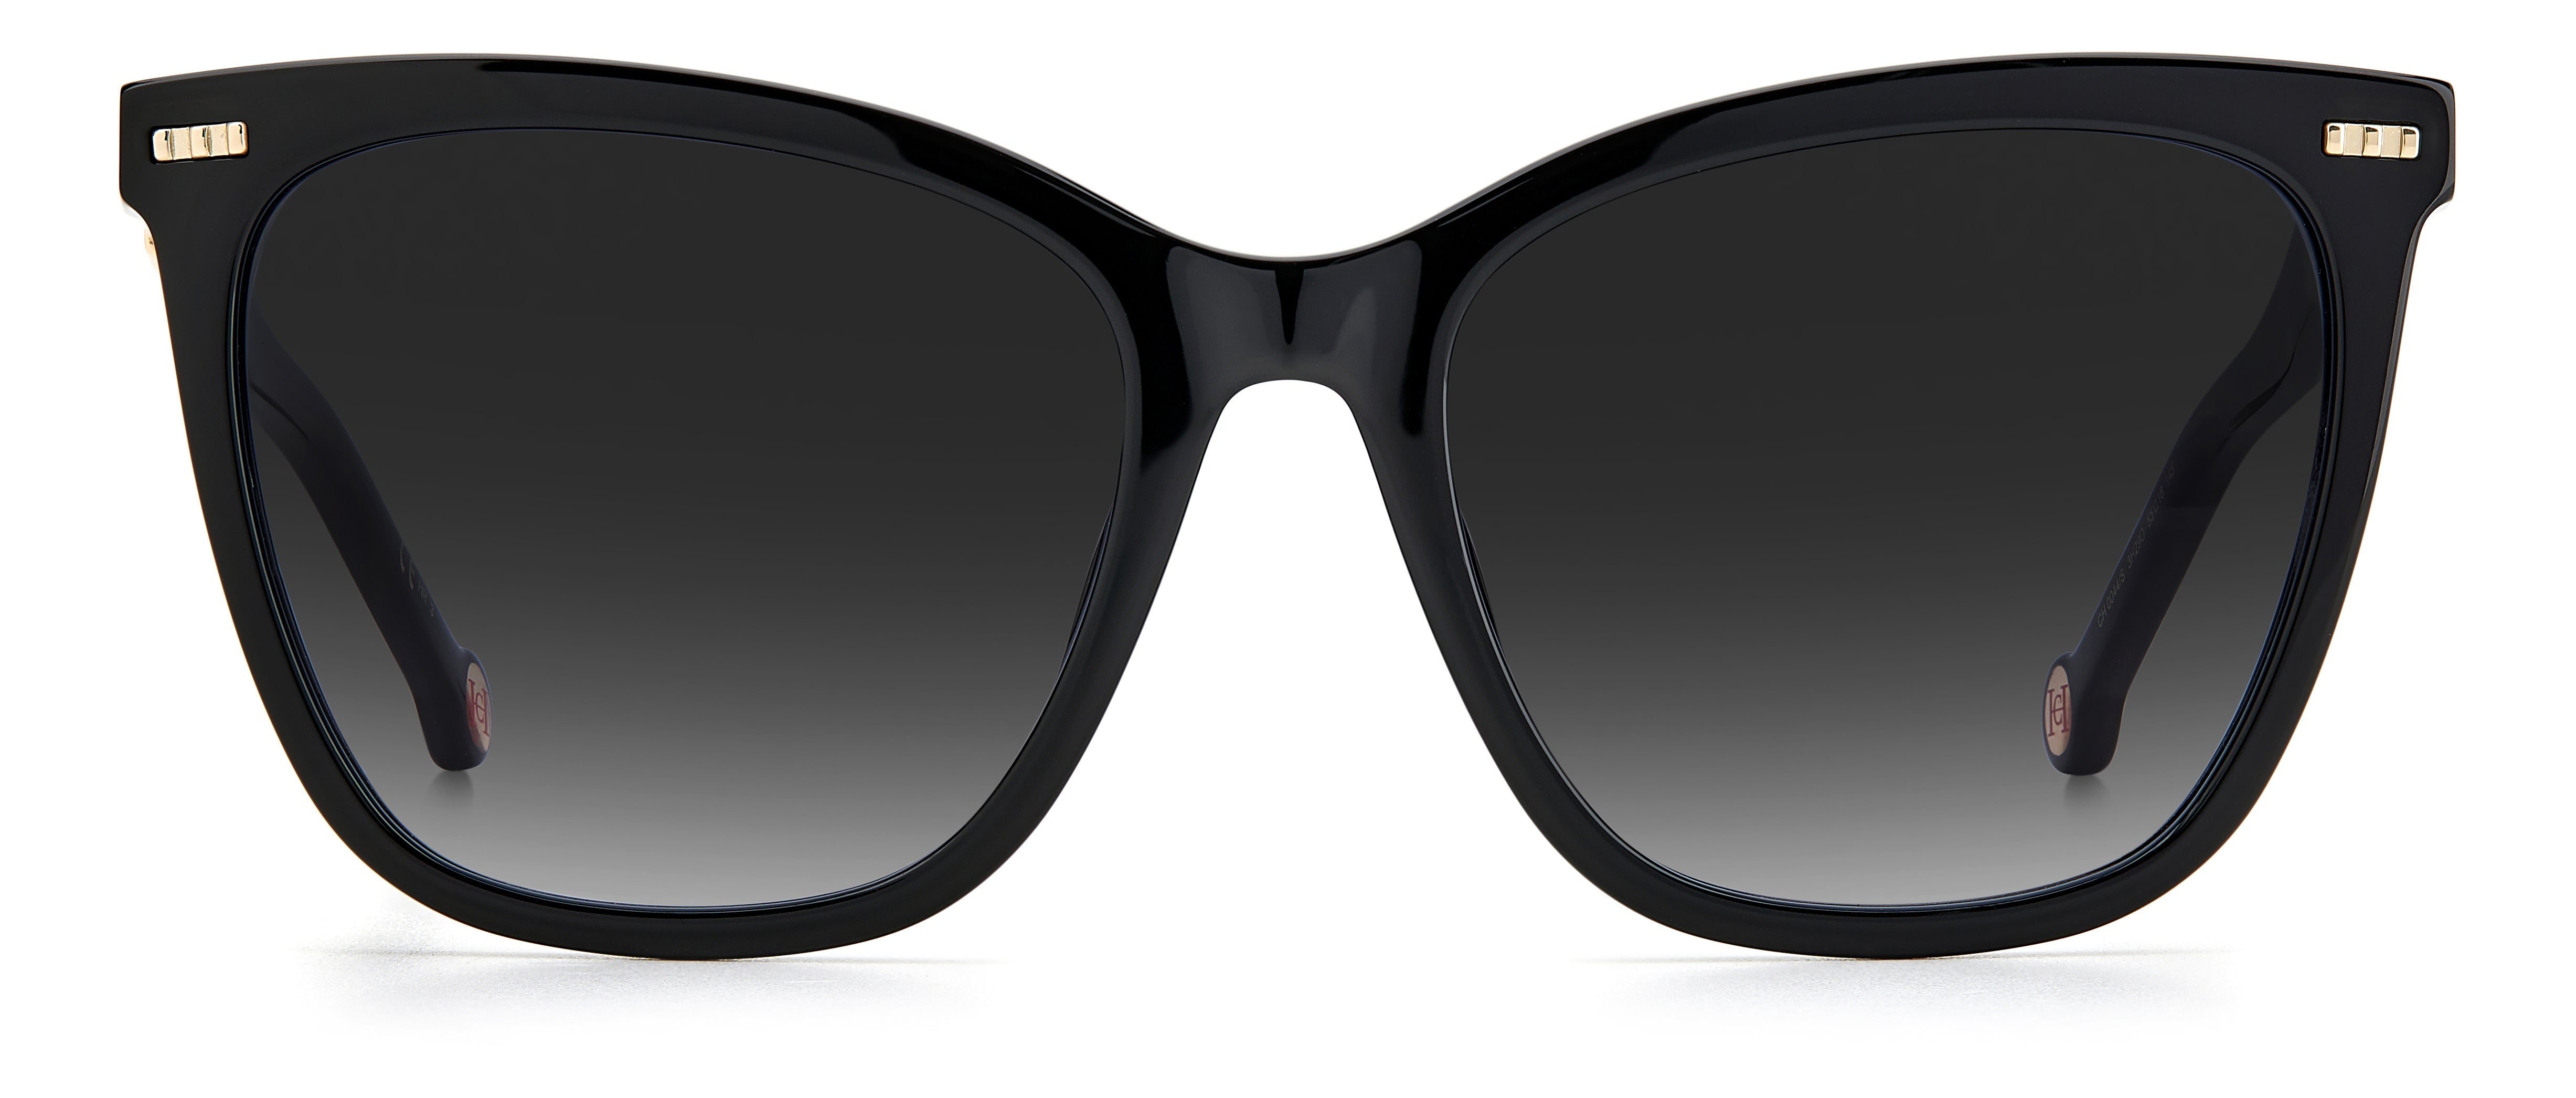 Carolina Herrera Woman Rectangular Sunglasses